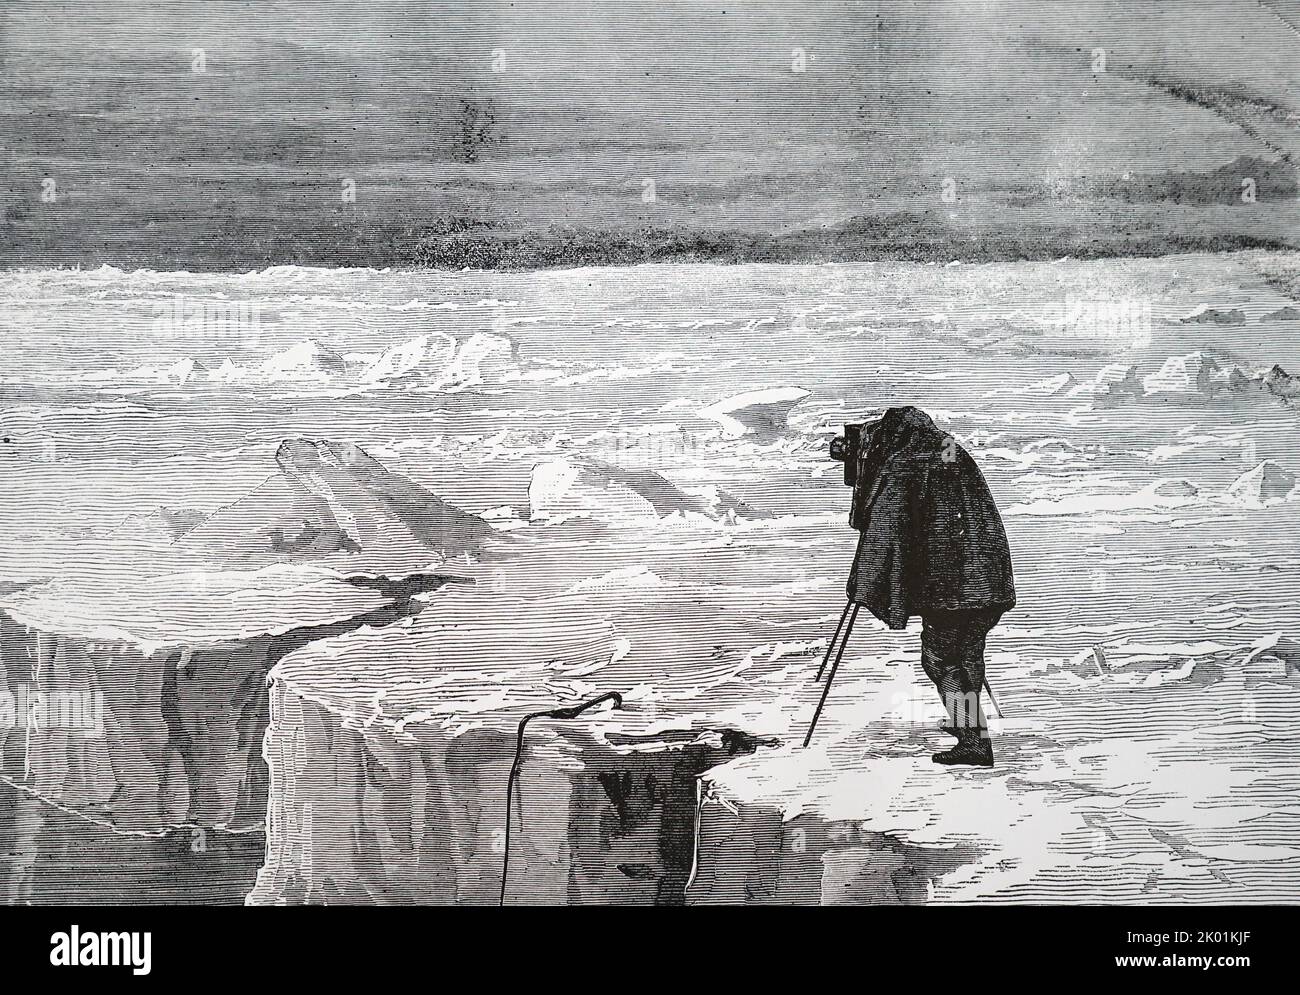 Photographier un mur de glace dans le détroit de Peel pendant l'expédition arctique de Pandora de 1874. Banque D'Images